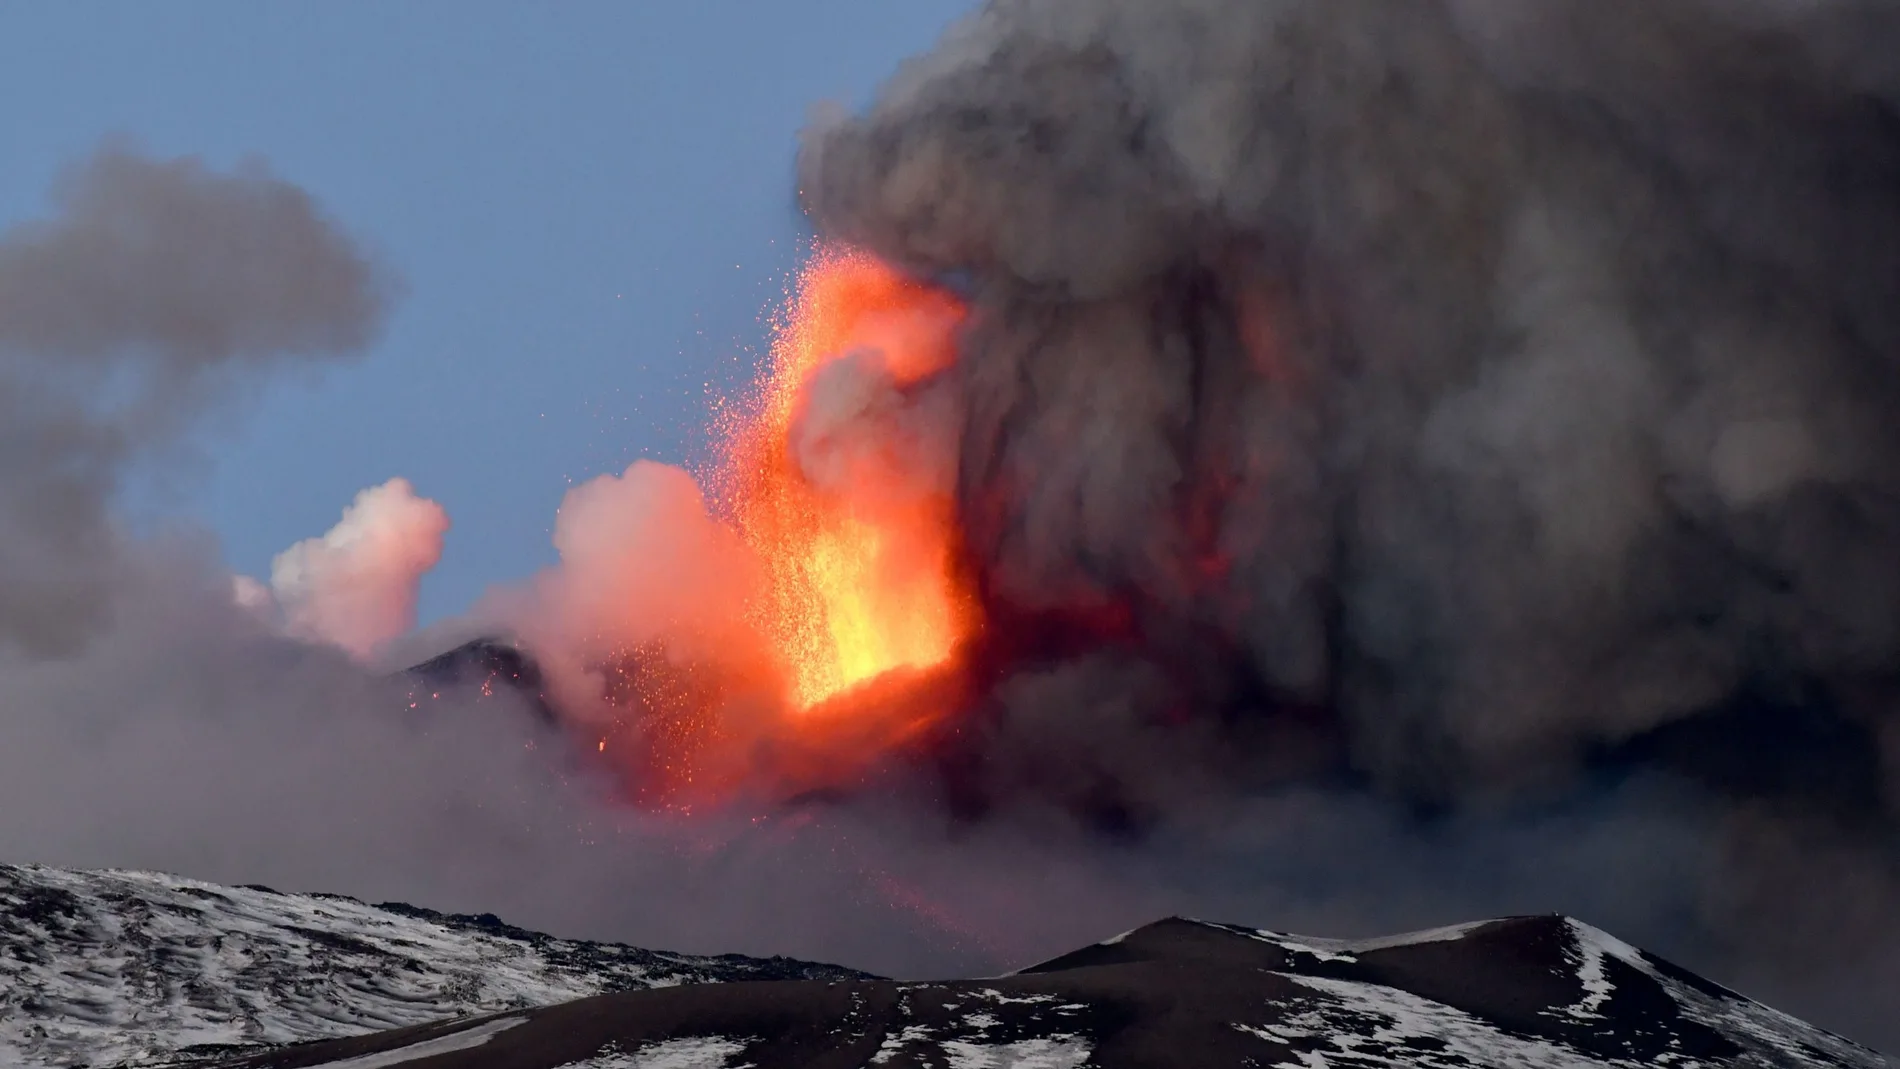 El volcán Etna, situado en Sicilia (sur de Italia), ha entrado este martes en erupción